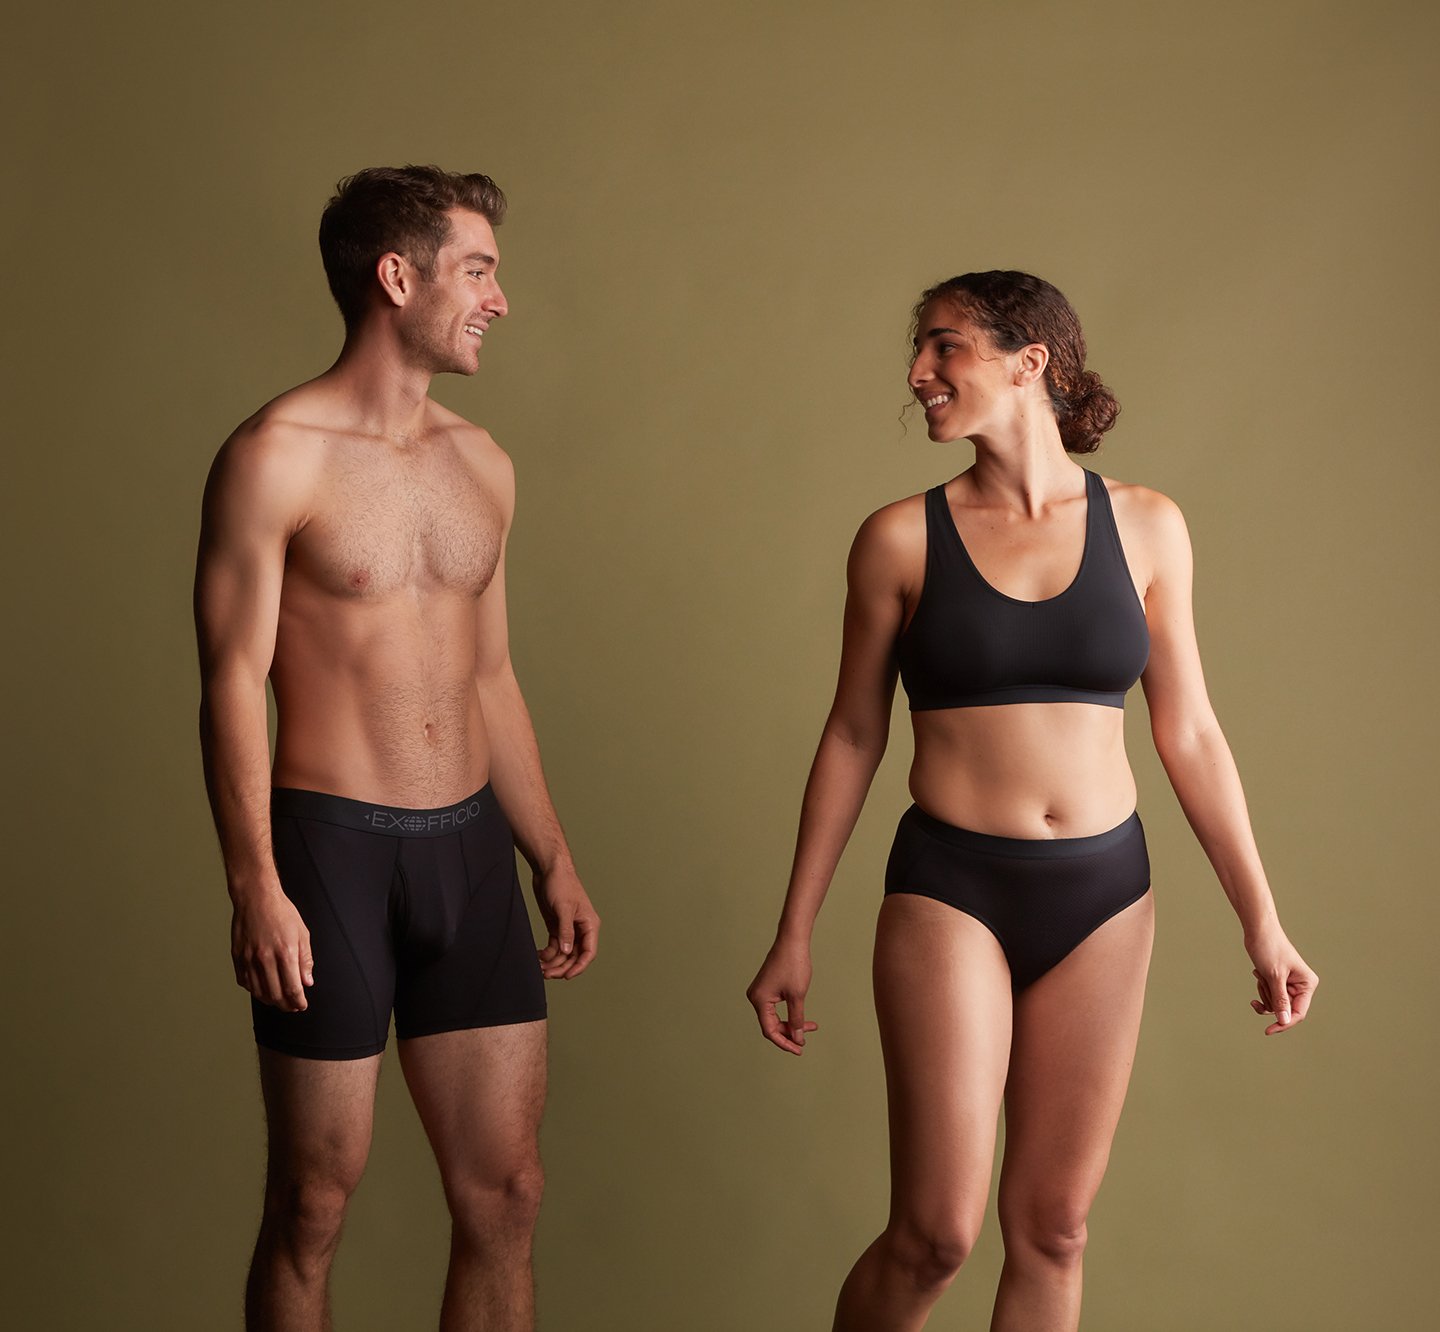 ExOfficio Travel Clothing & Underwear for Men & Women